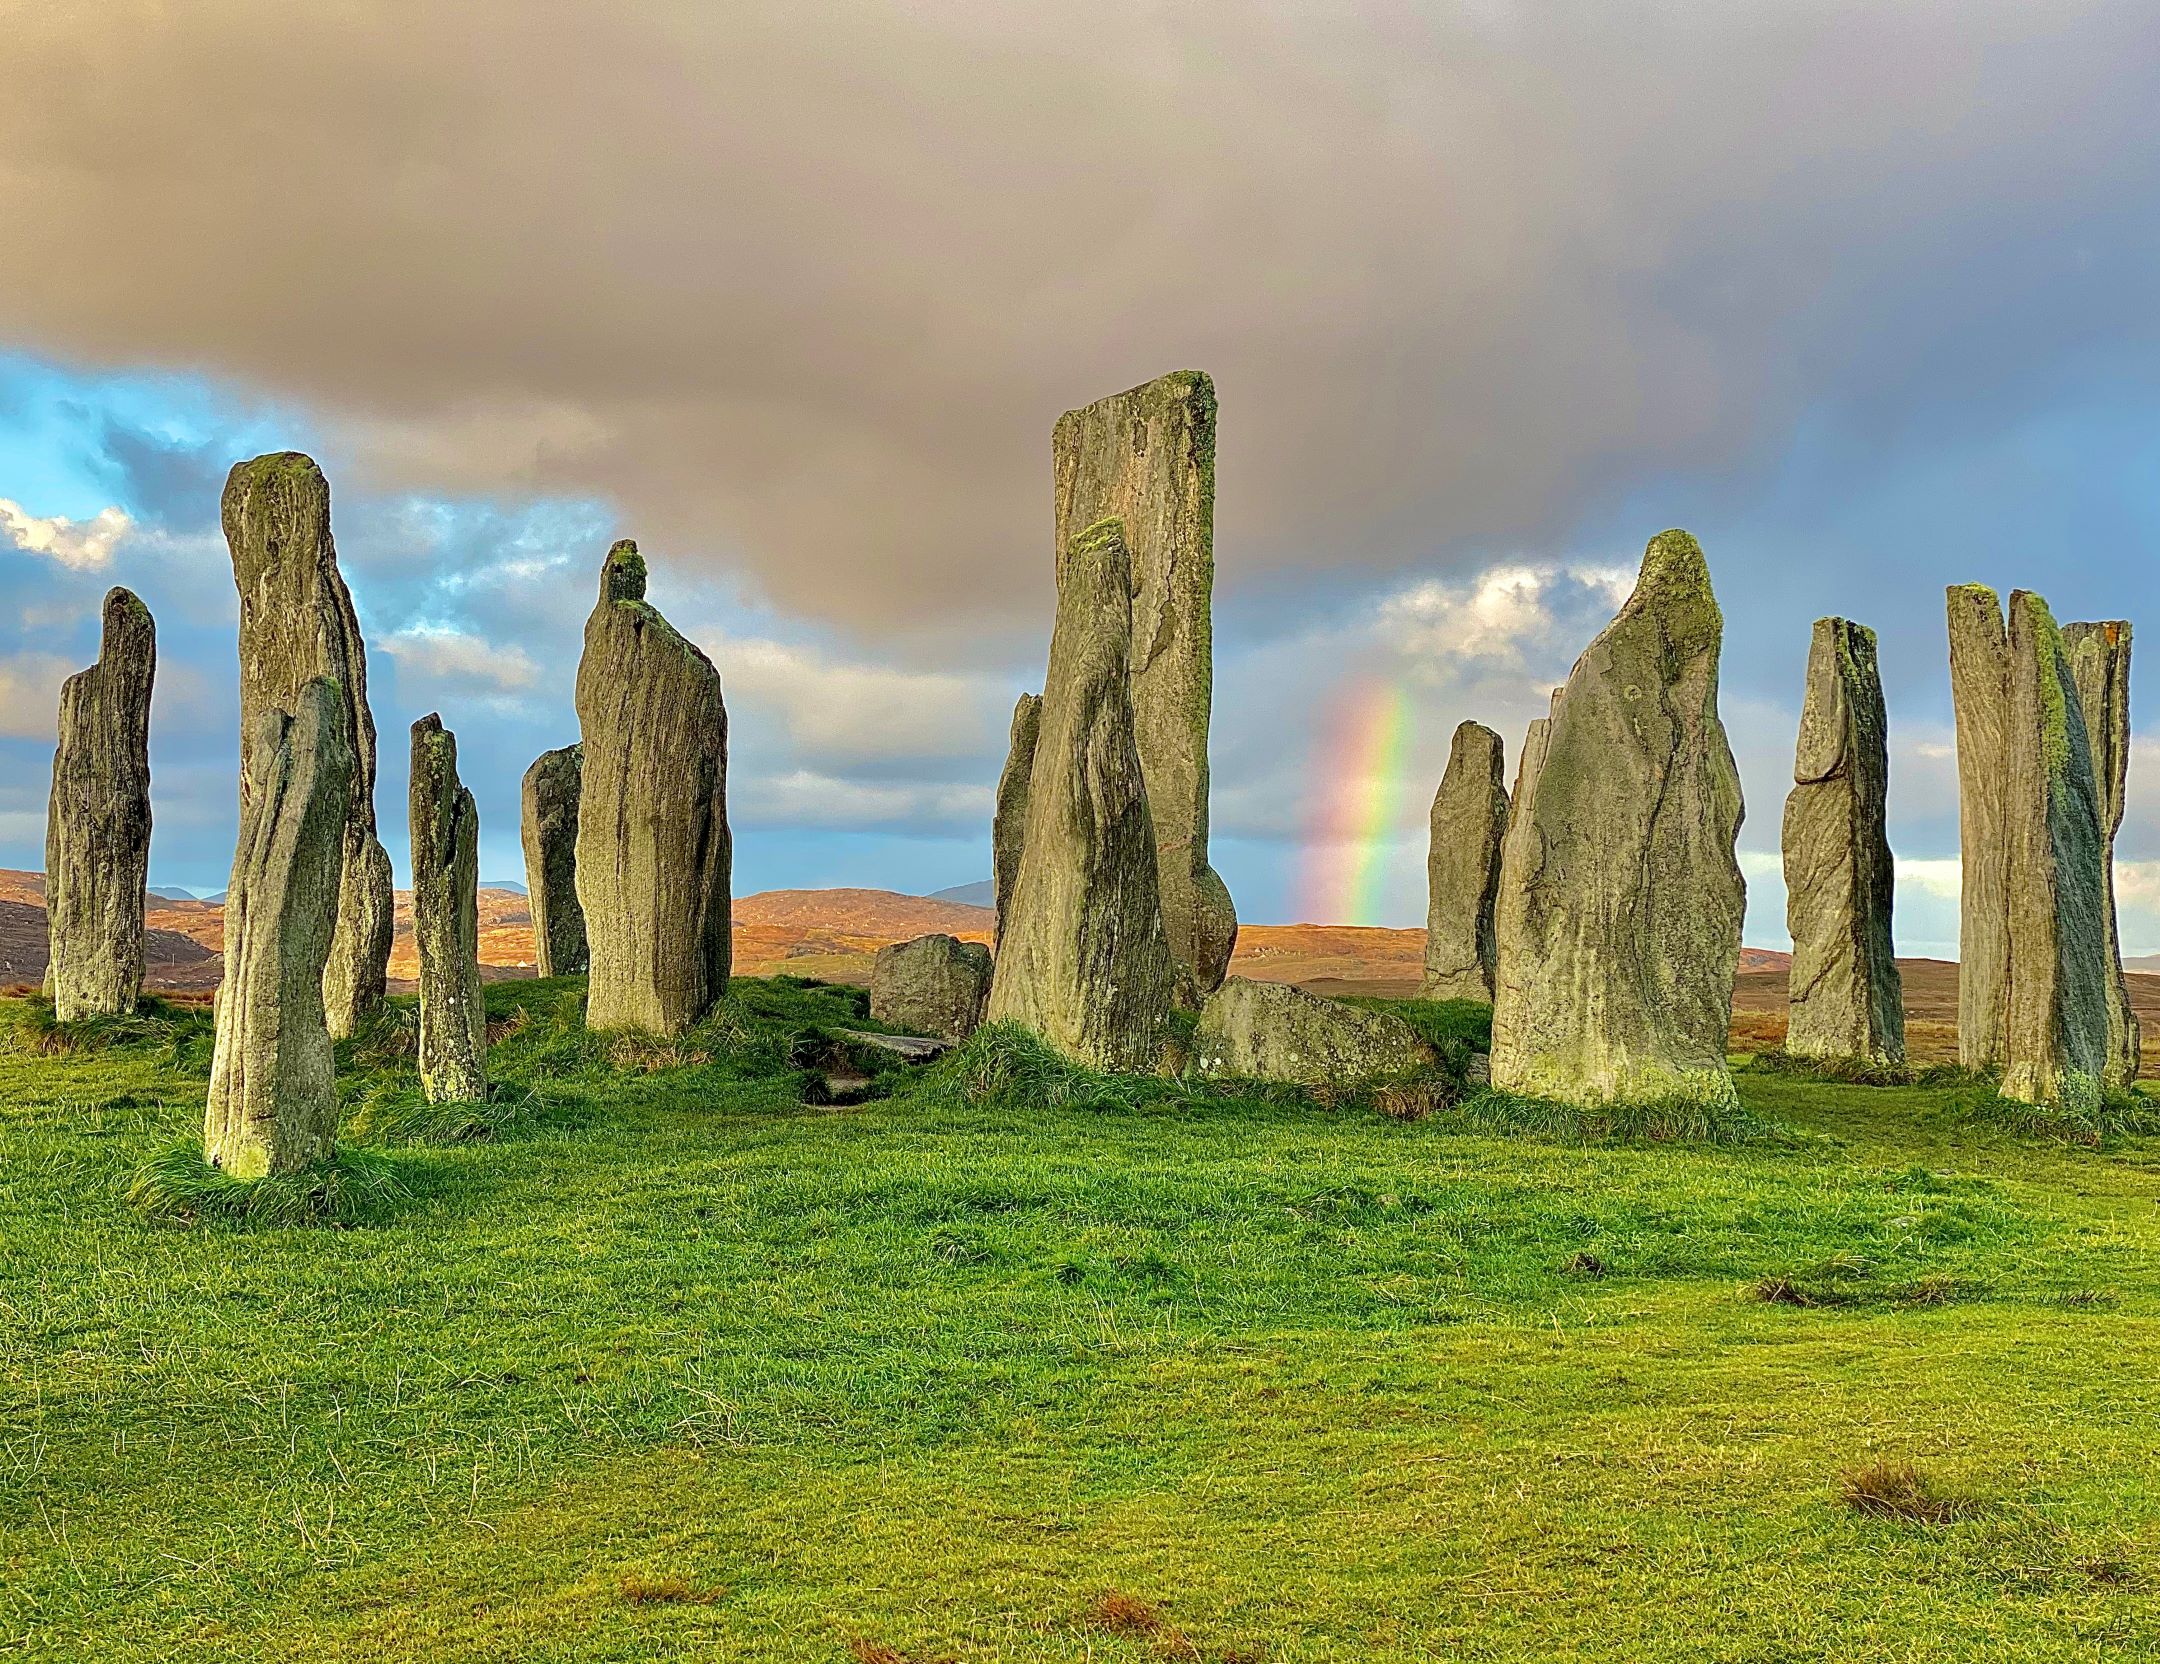 Photograph of Calainais Stones with rainbow